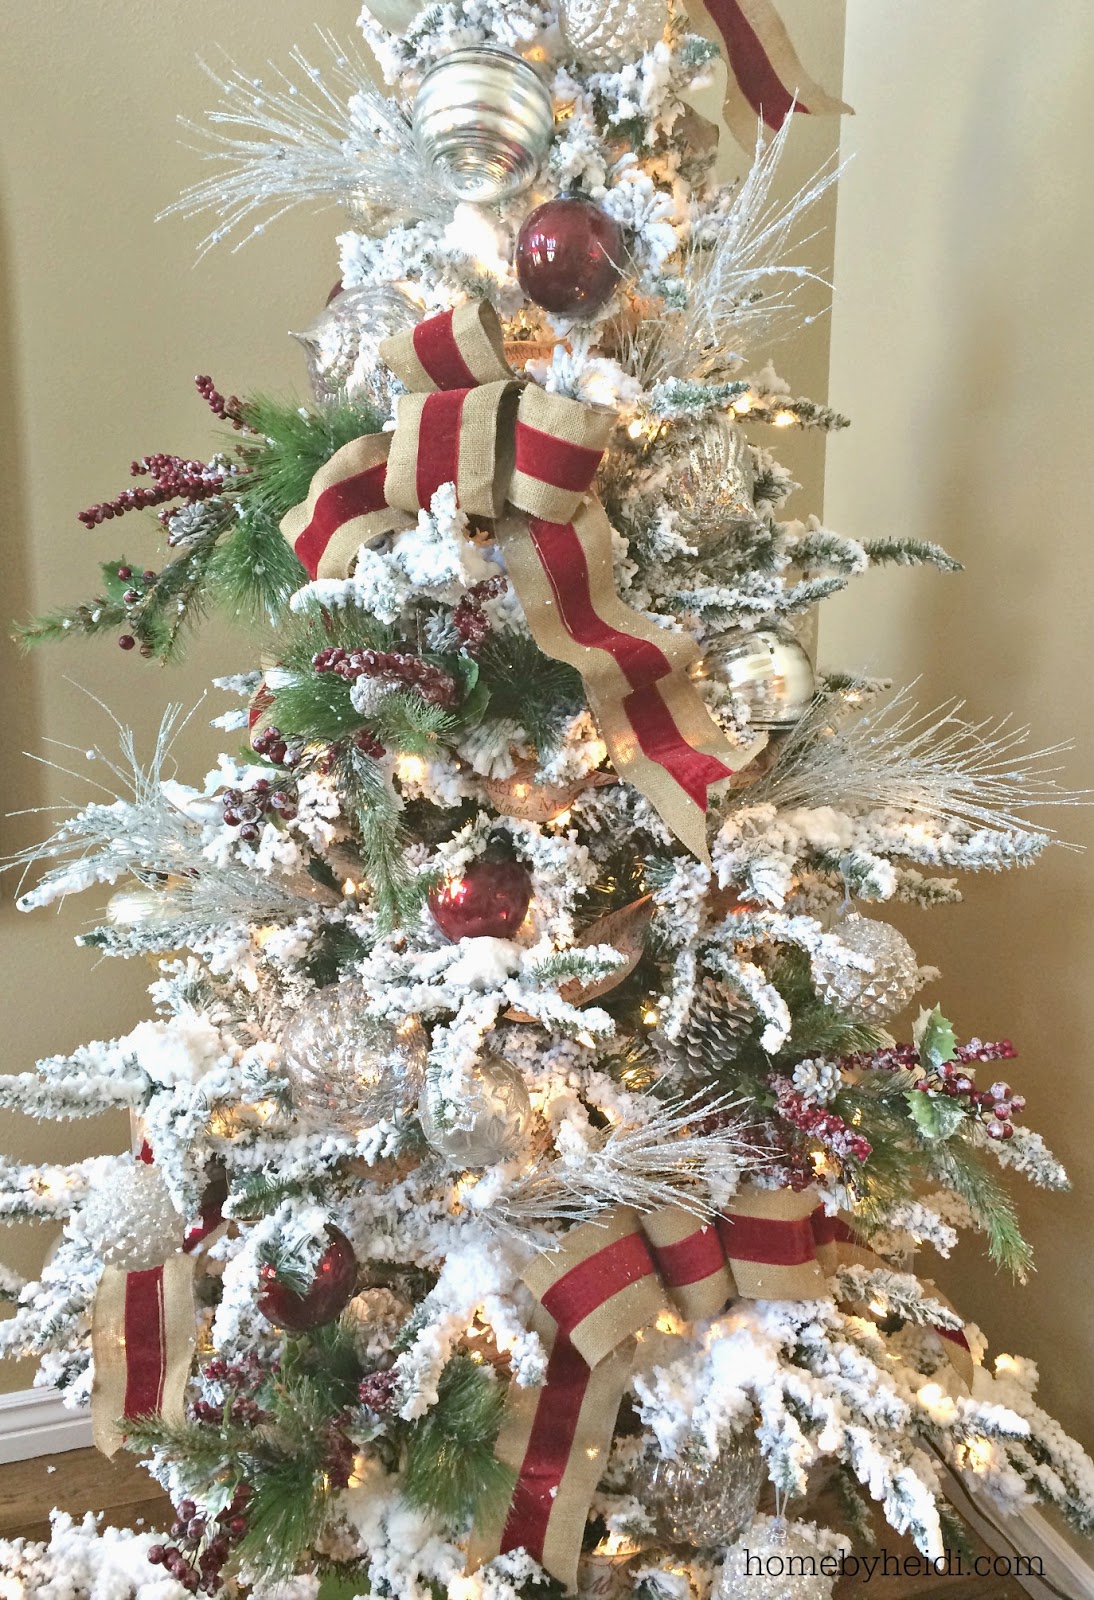 Home By Heidi: Christmas Tree Ribbon